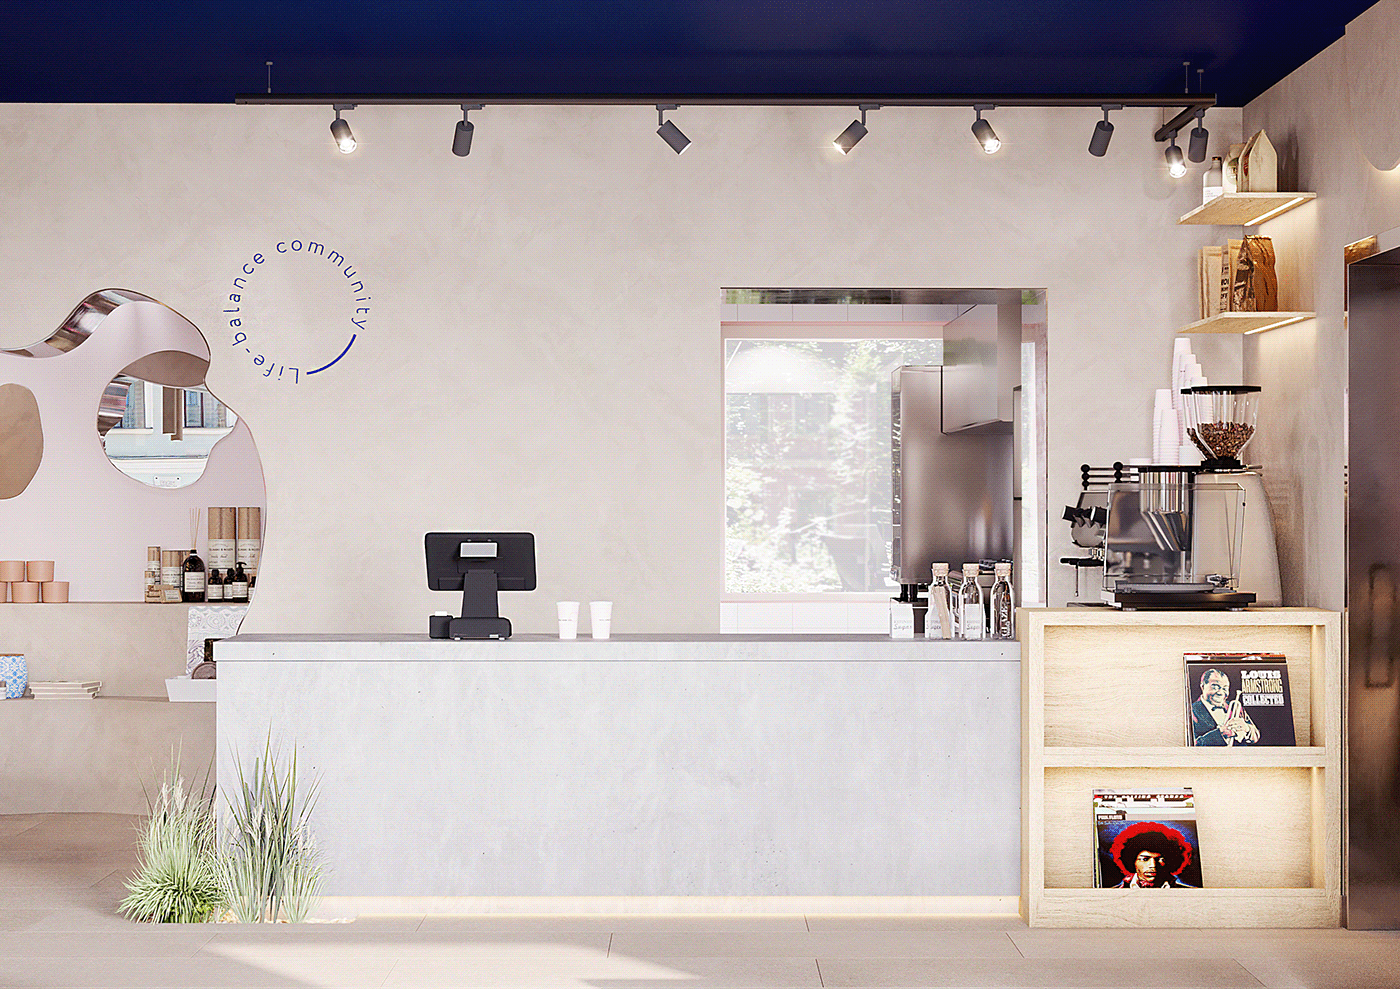 bar branding  cafe Coffee House concrete design Interior restaurant shop